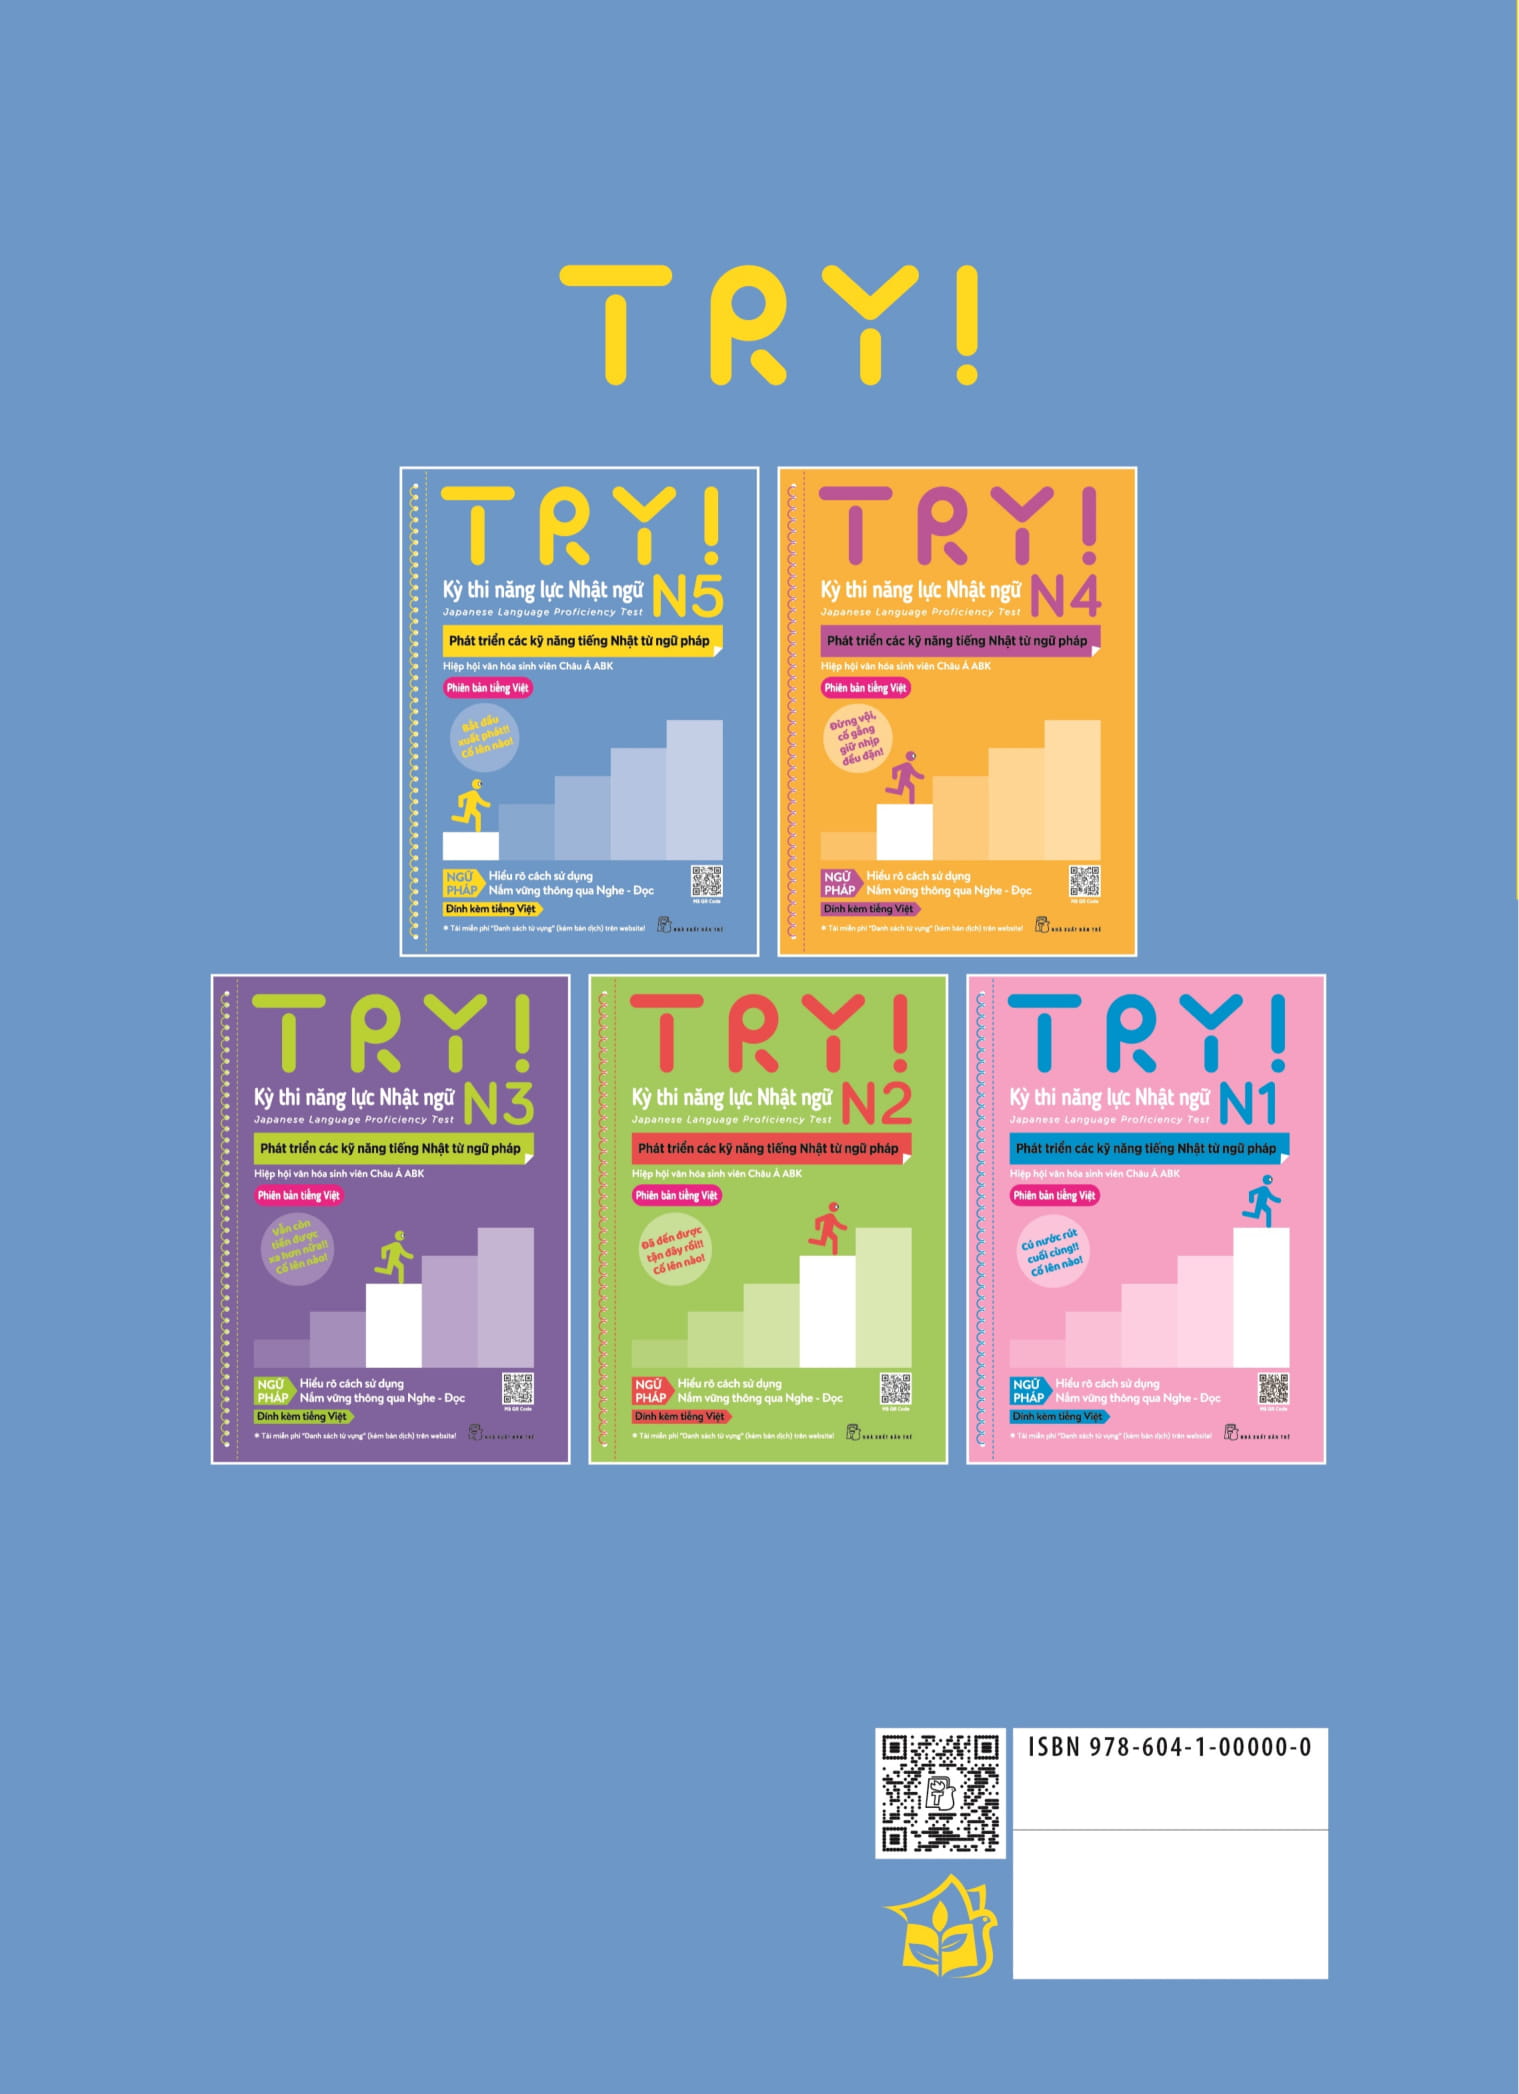 Try! Thi Năng Lực Nhật Ngữ N5 - Phát Triển Các Kỹ Năng Tiếng Nhật Từ Ngữ Pháp Phiên Bản Tiếng Việt PDF